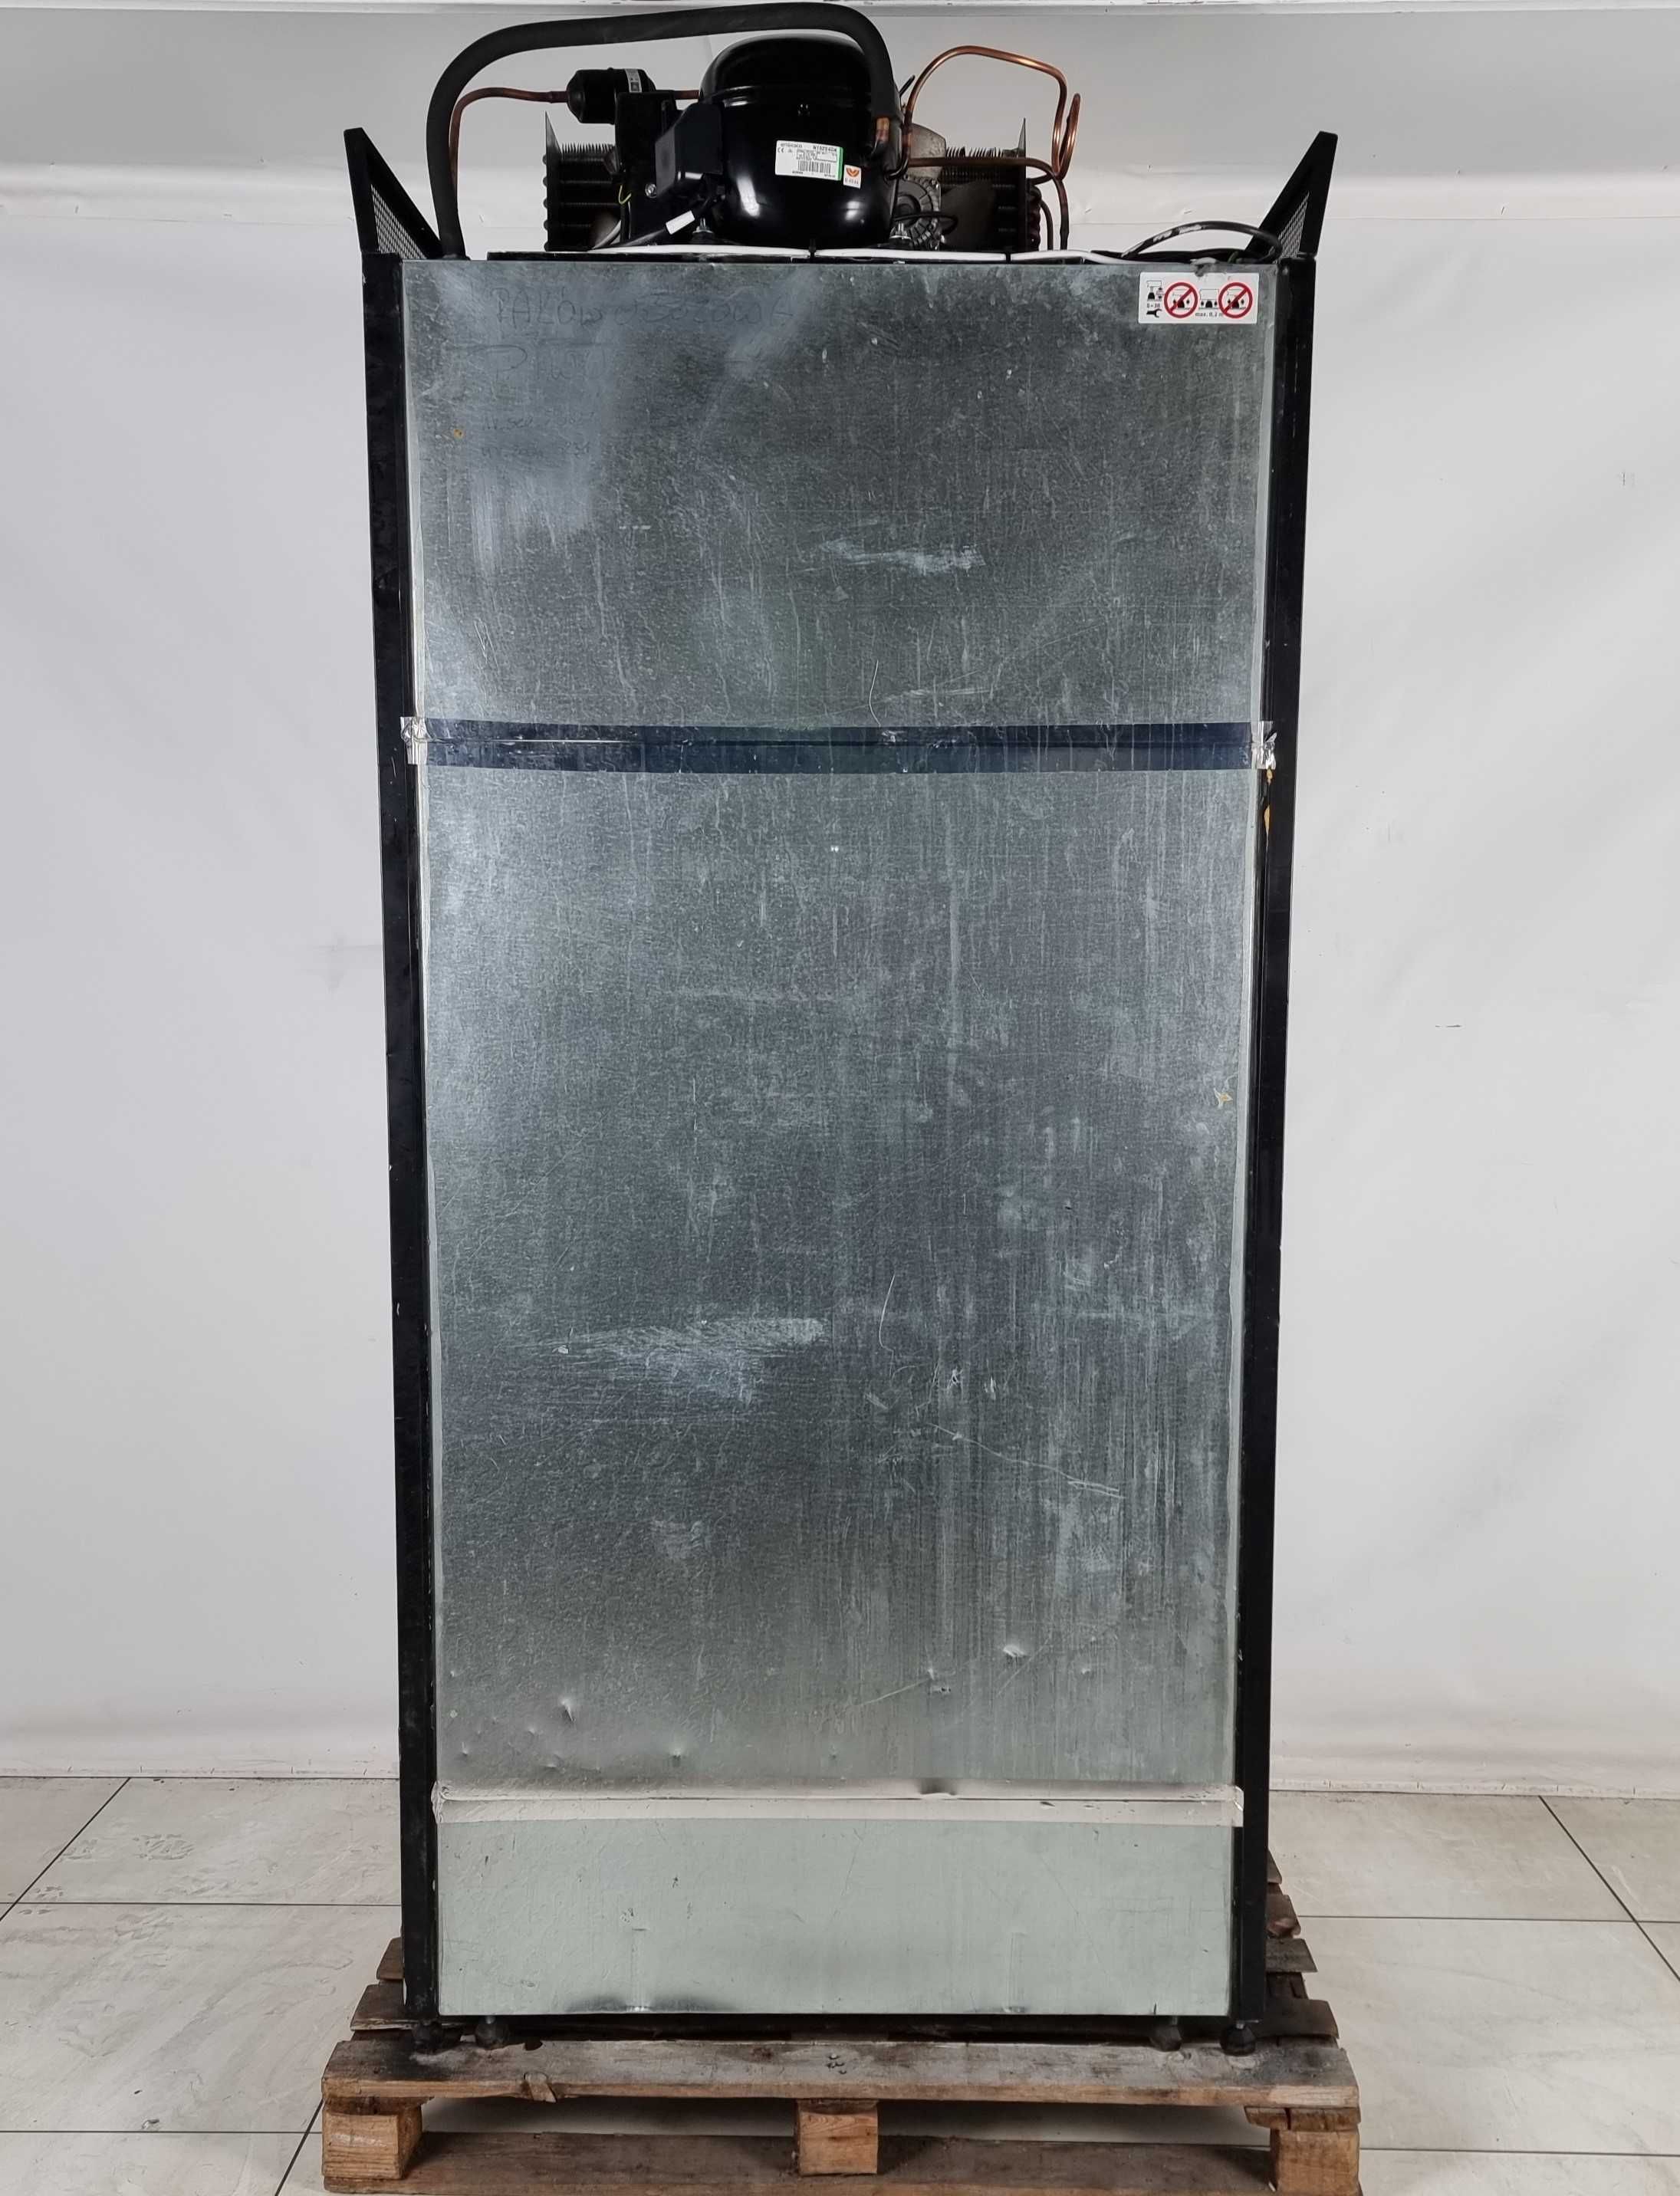 Холодильний регал «JBG-2», 1.0 м. (Польща) (+3° +10°), Б/у 2508355